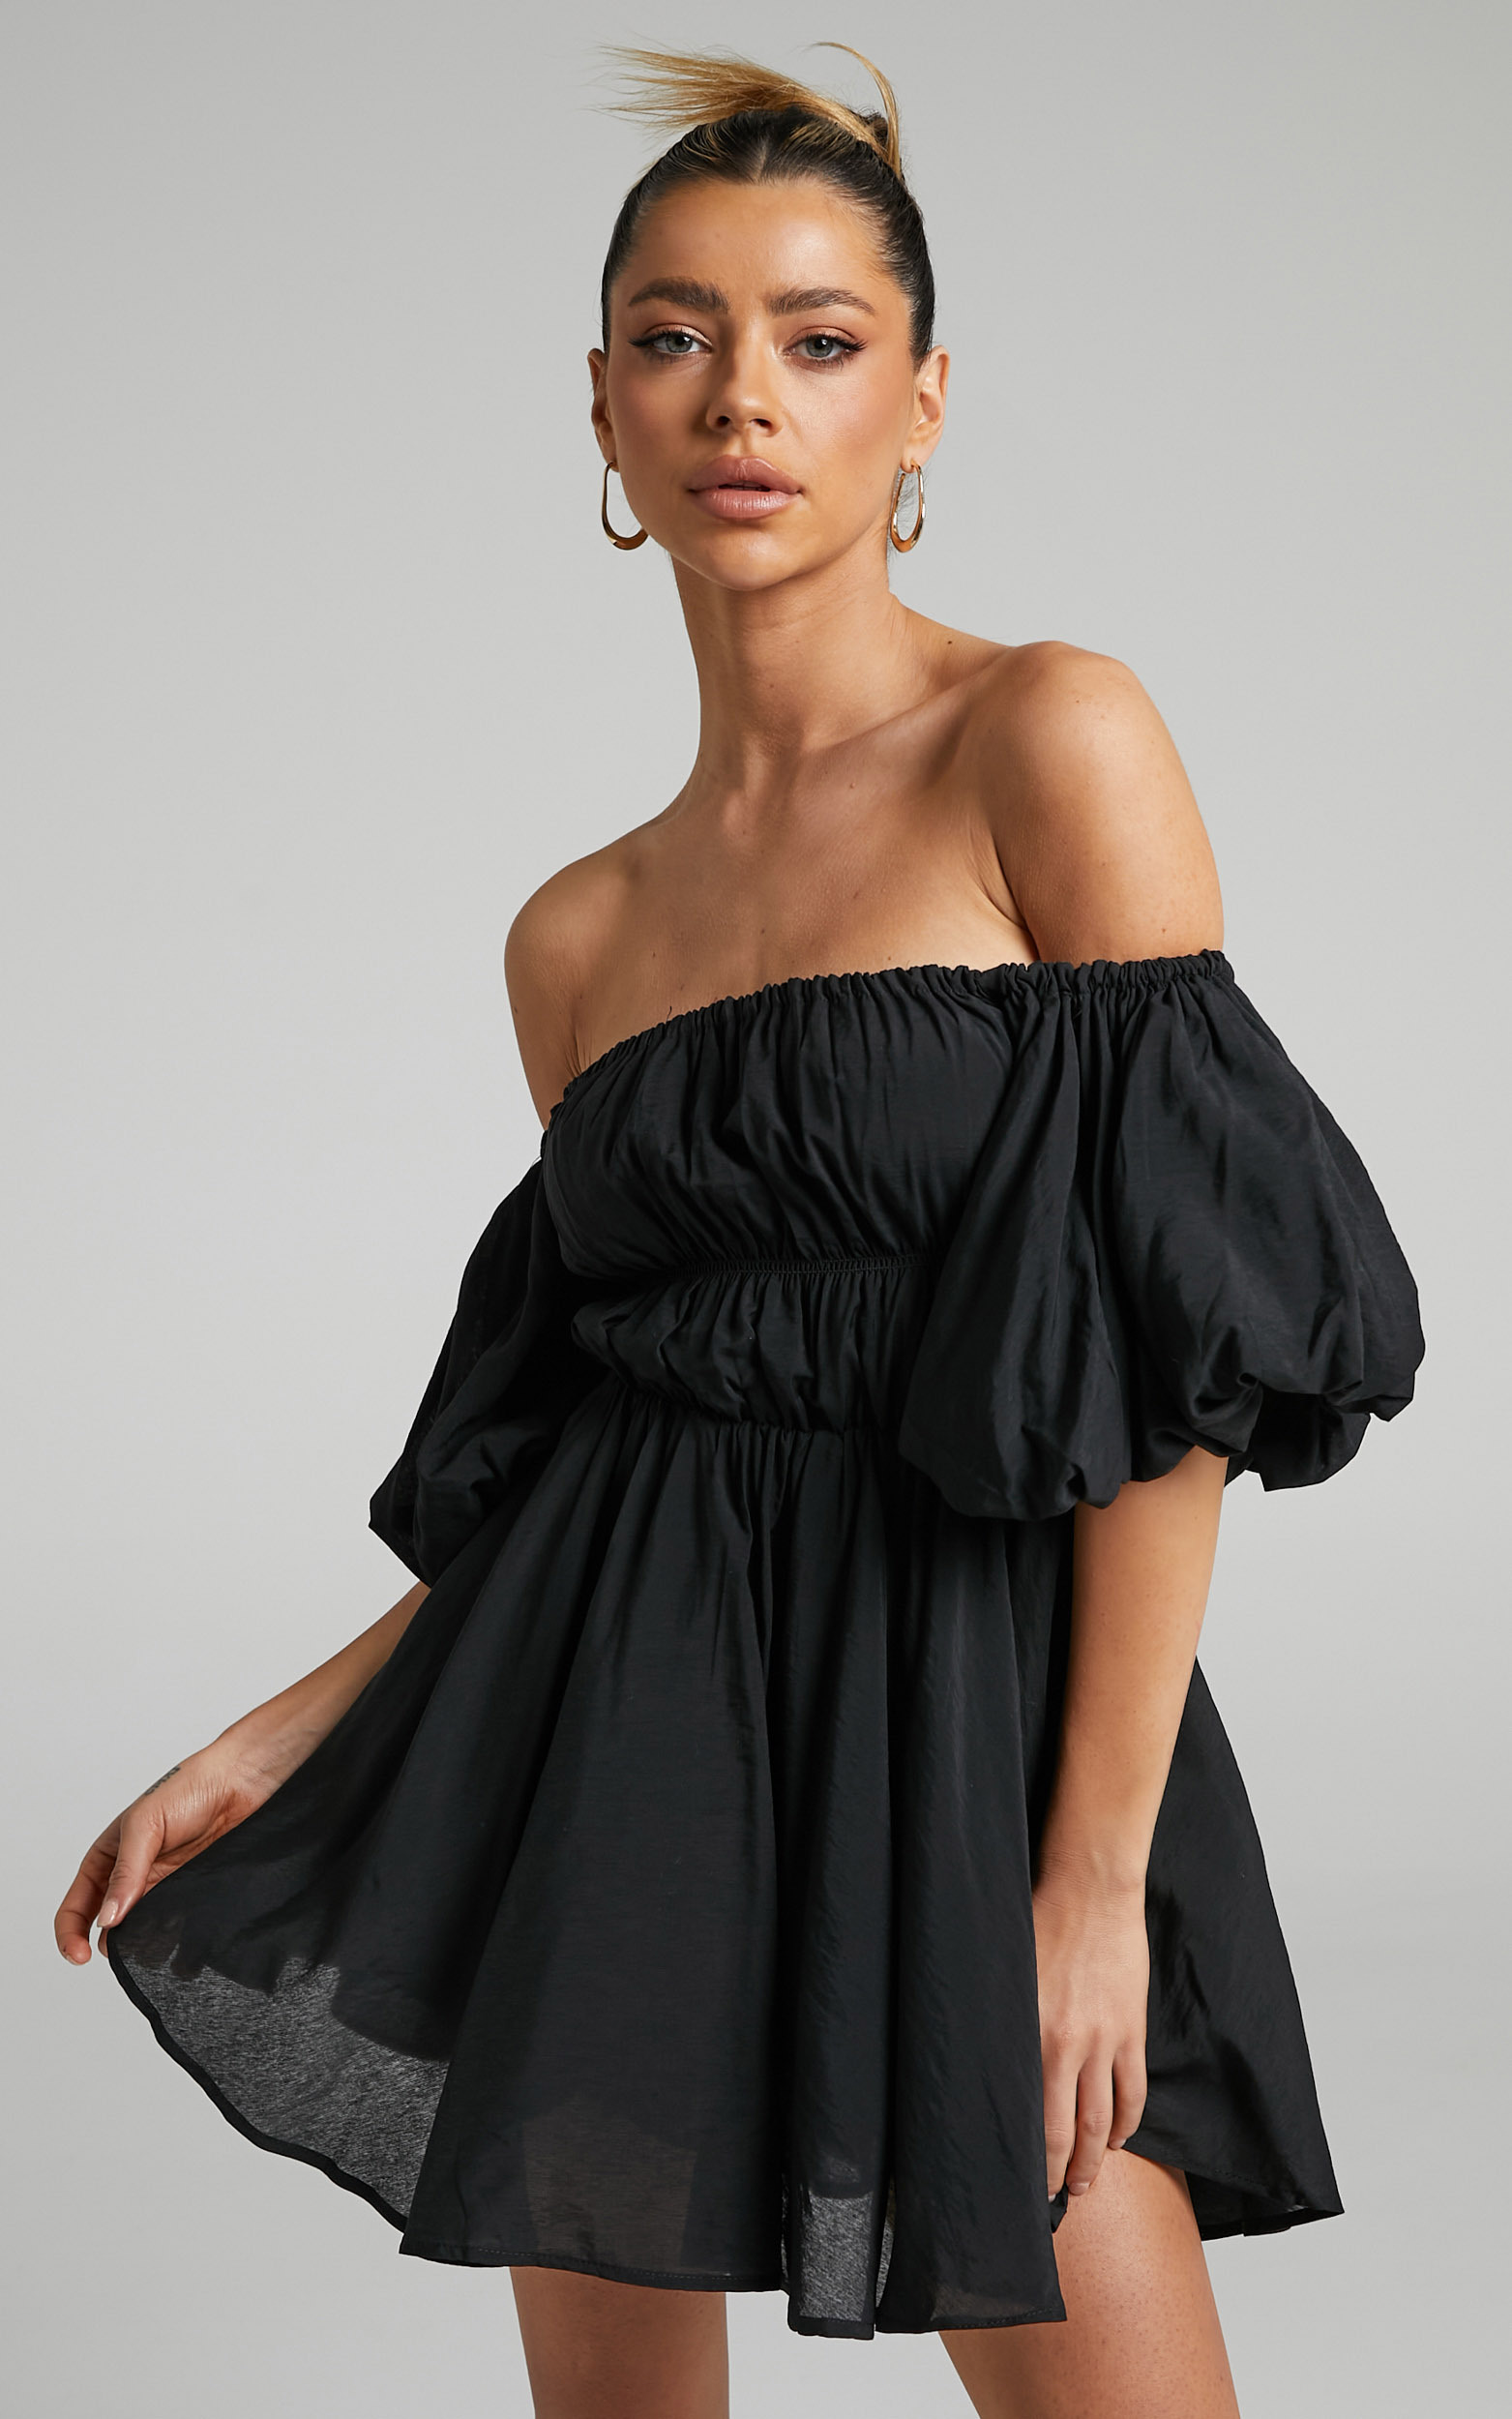 Jessra Off Shoulder Puff Sleeve Mini Dress in Black - 06, BLK1, hi-res image number null